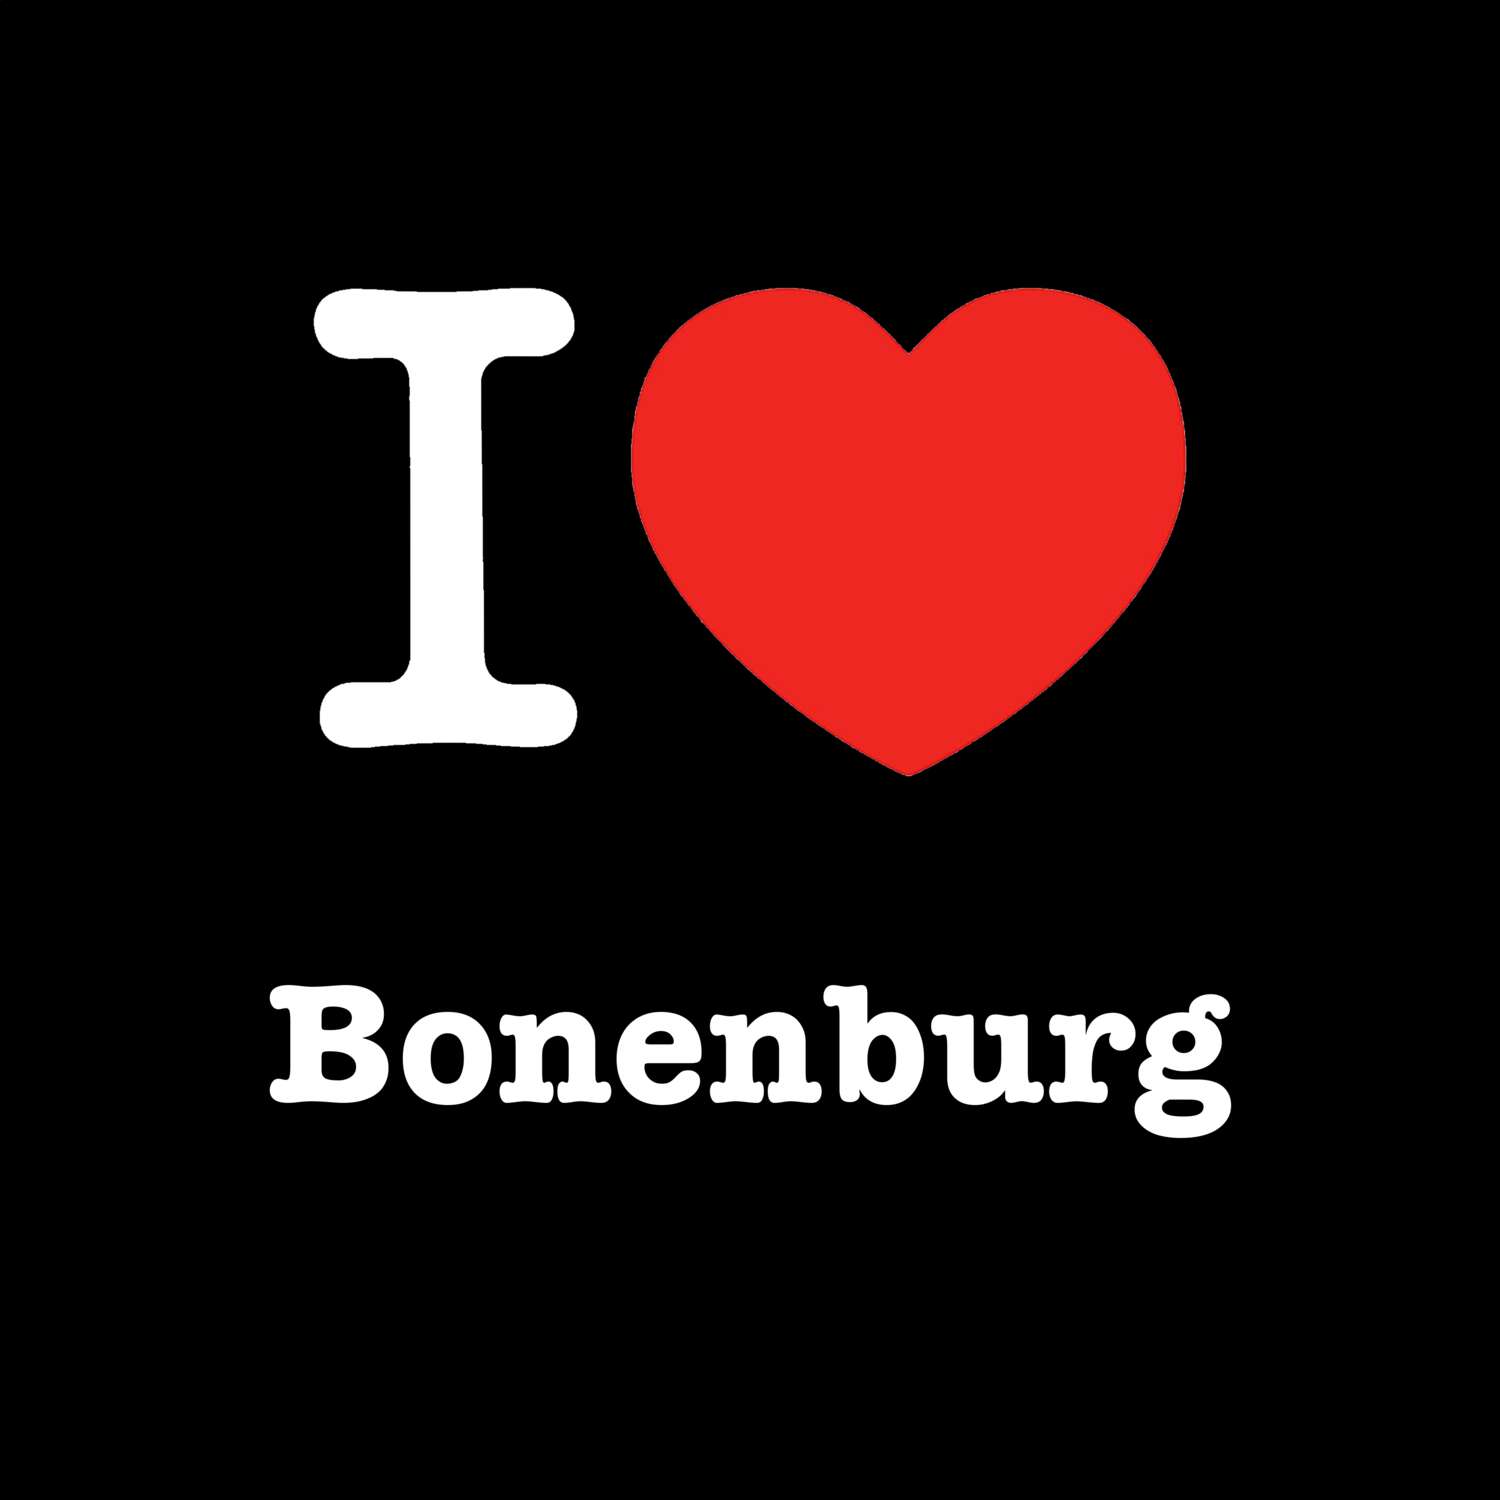 Bonenburg T-Shirt »I love«